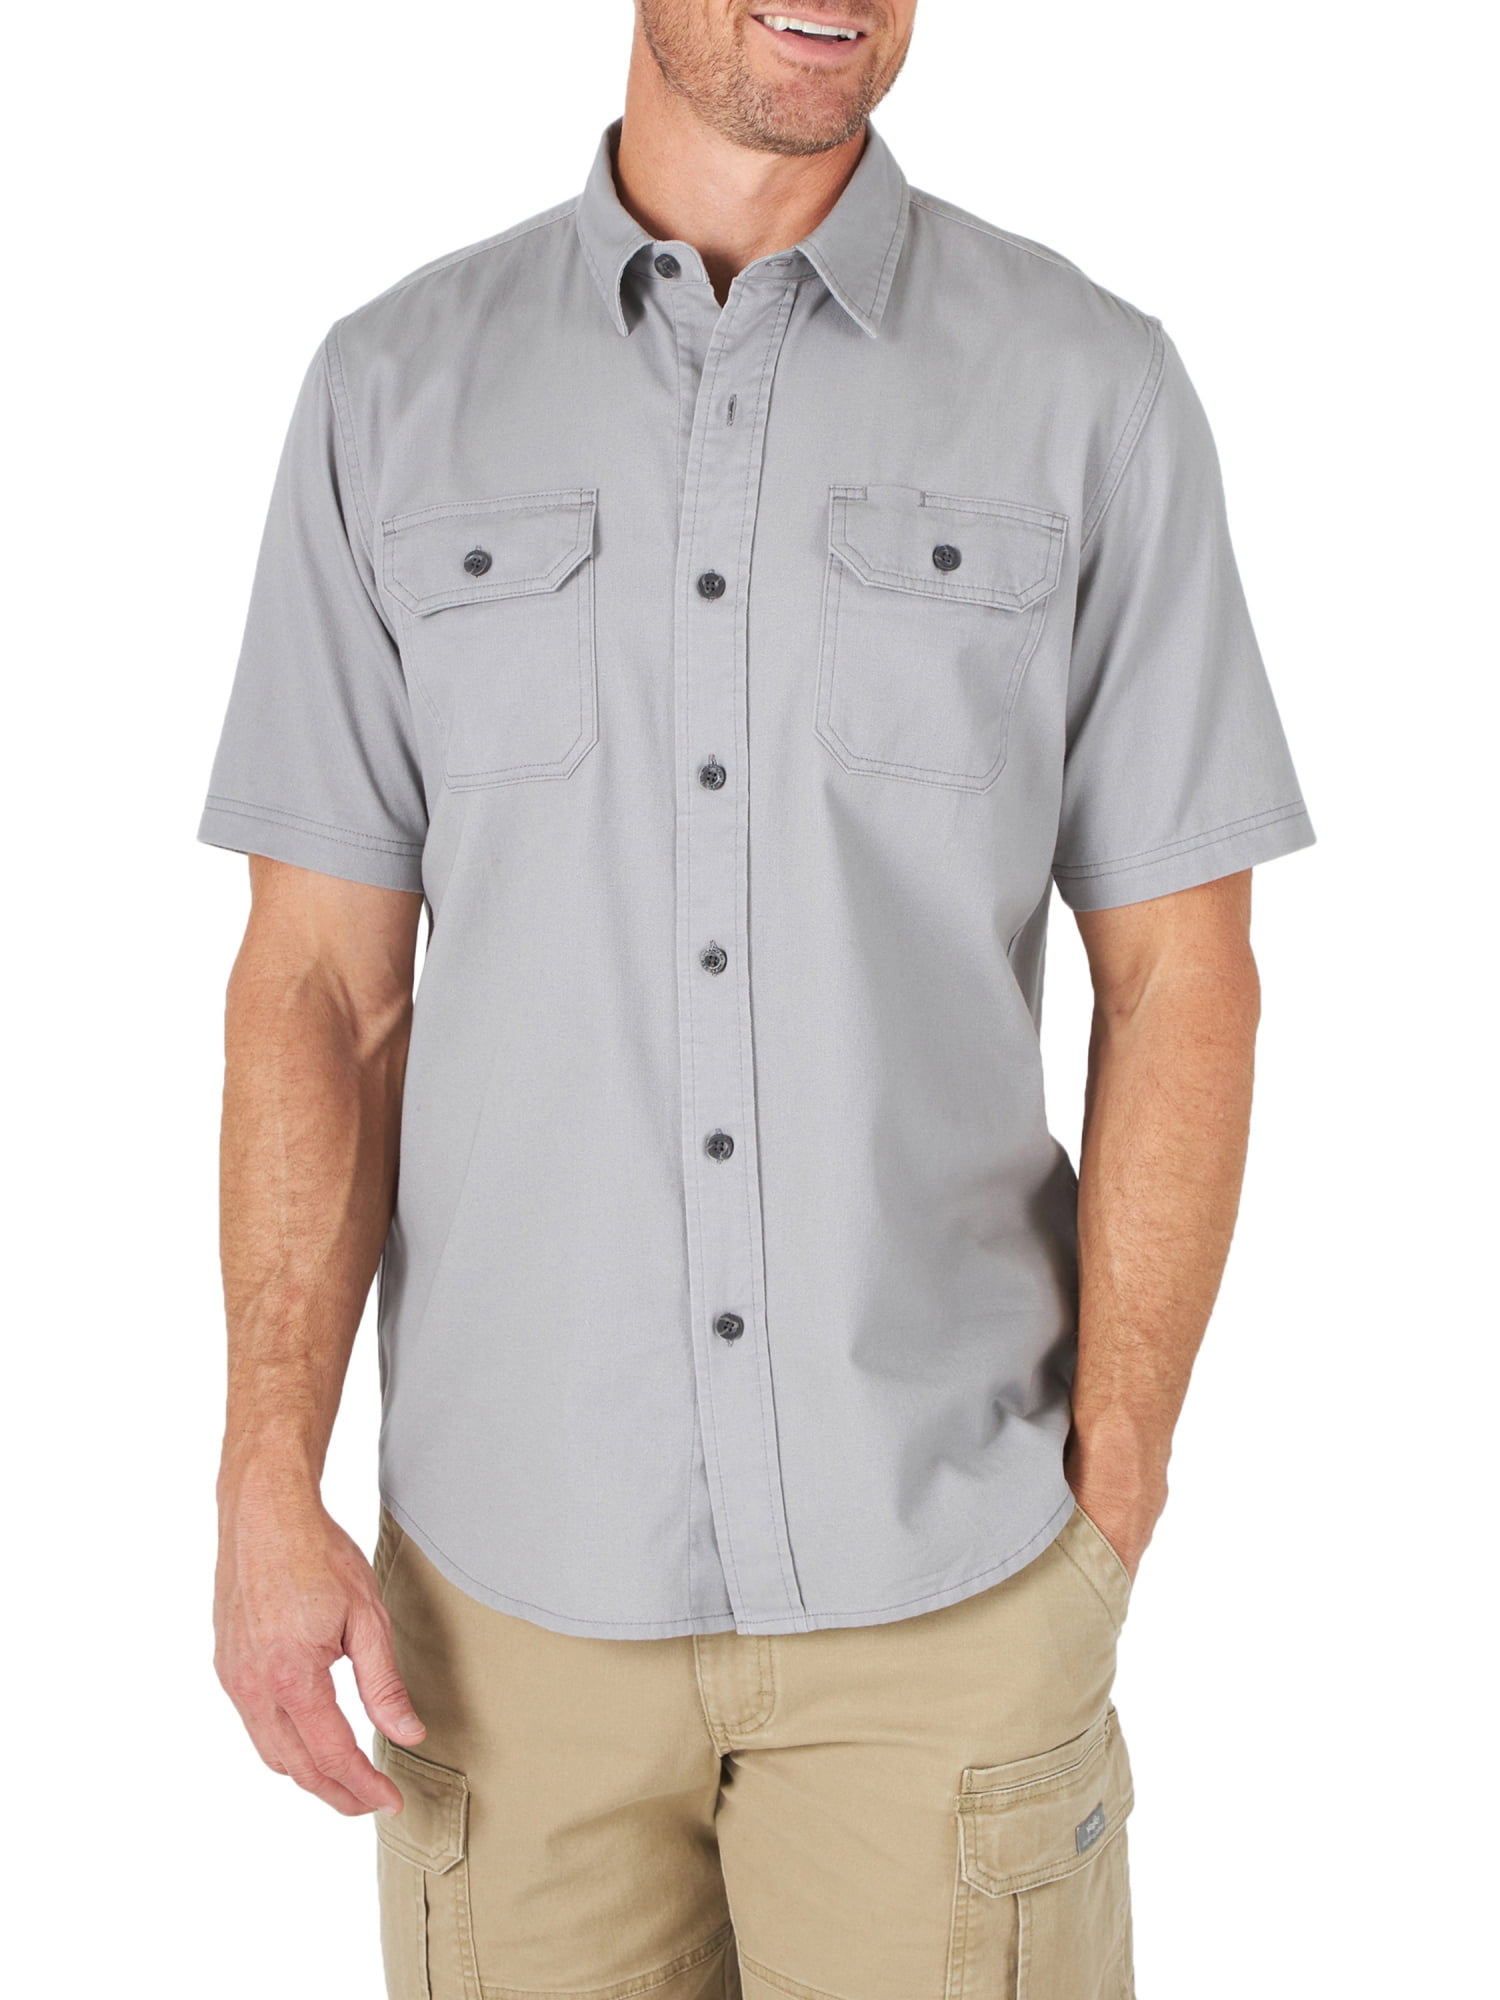 Fseason-Men Oxford Regular Fit Solid Washed Short Sleve Shirt Blouse Tops 